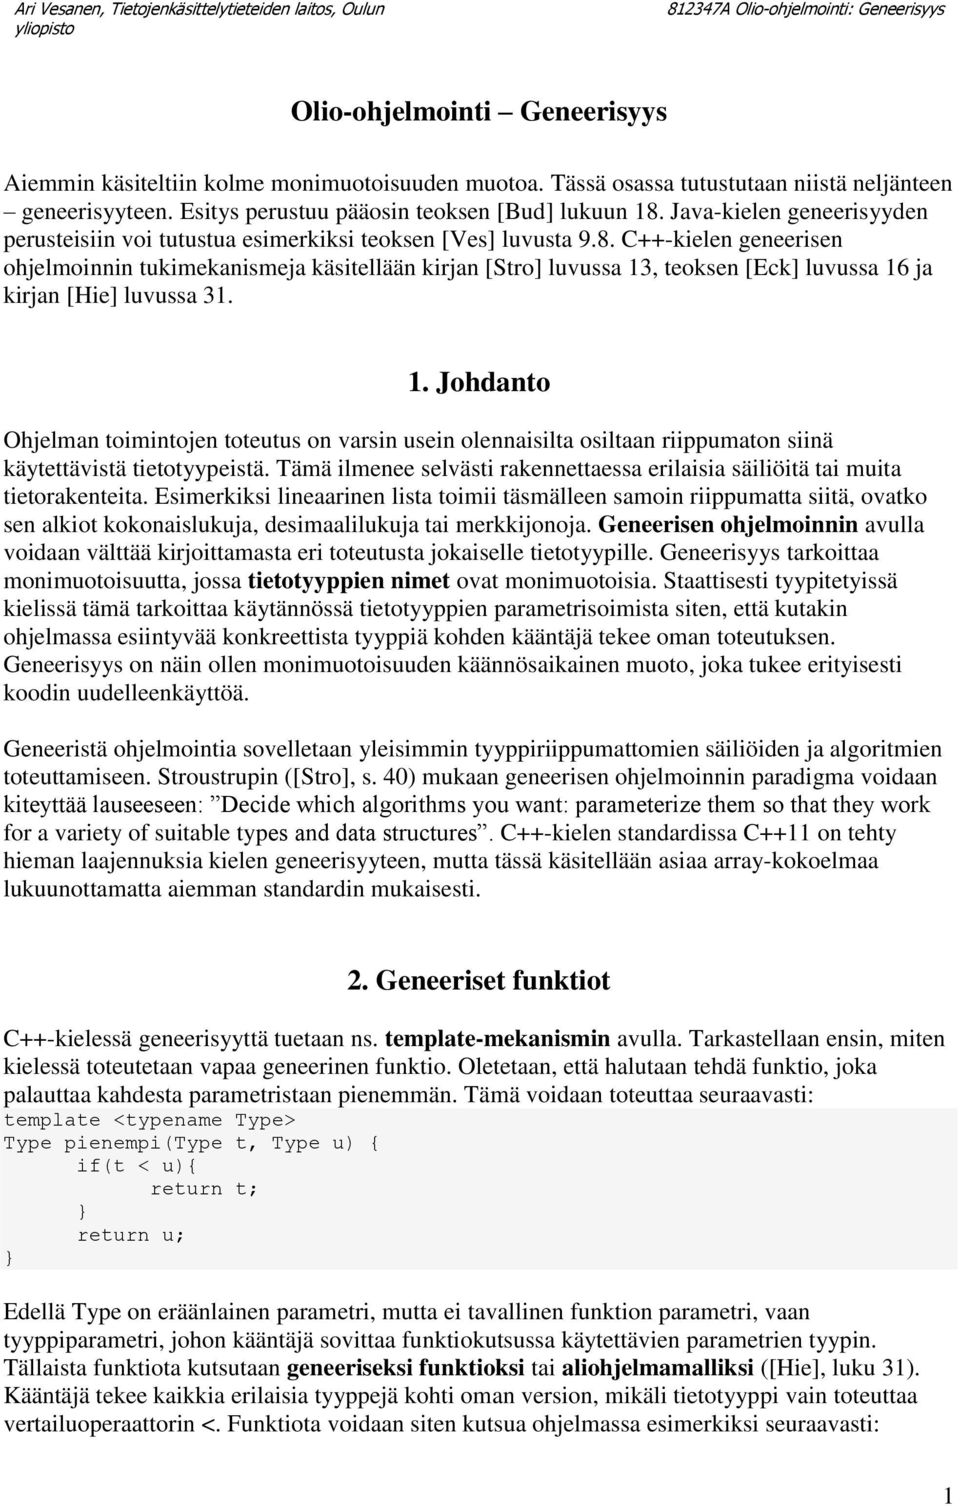 C++-kielen geneerisen ohjelmoinnin tukimekanismeja käsitellään kirjan [Stro] luvussa 13